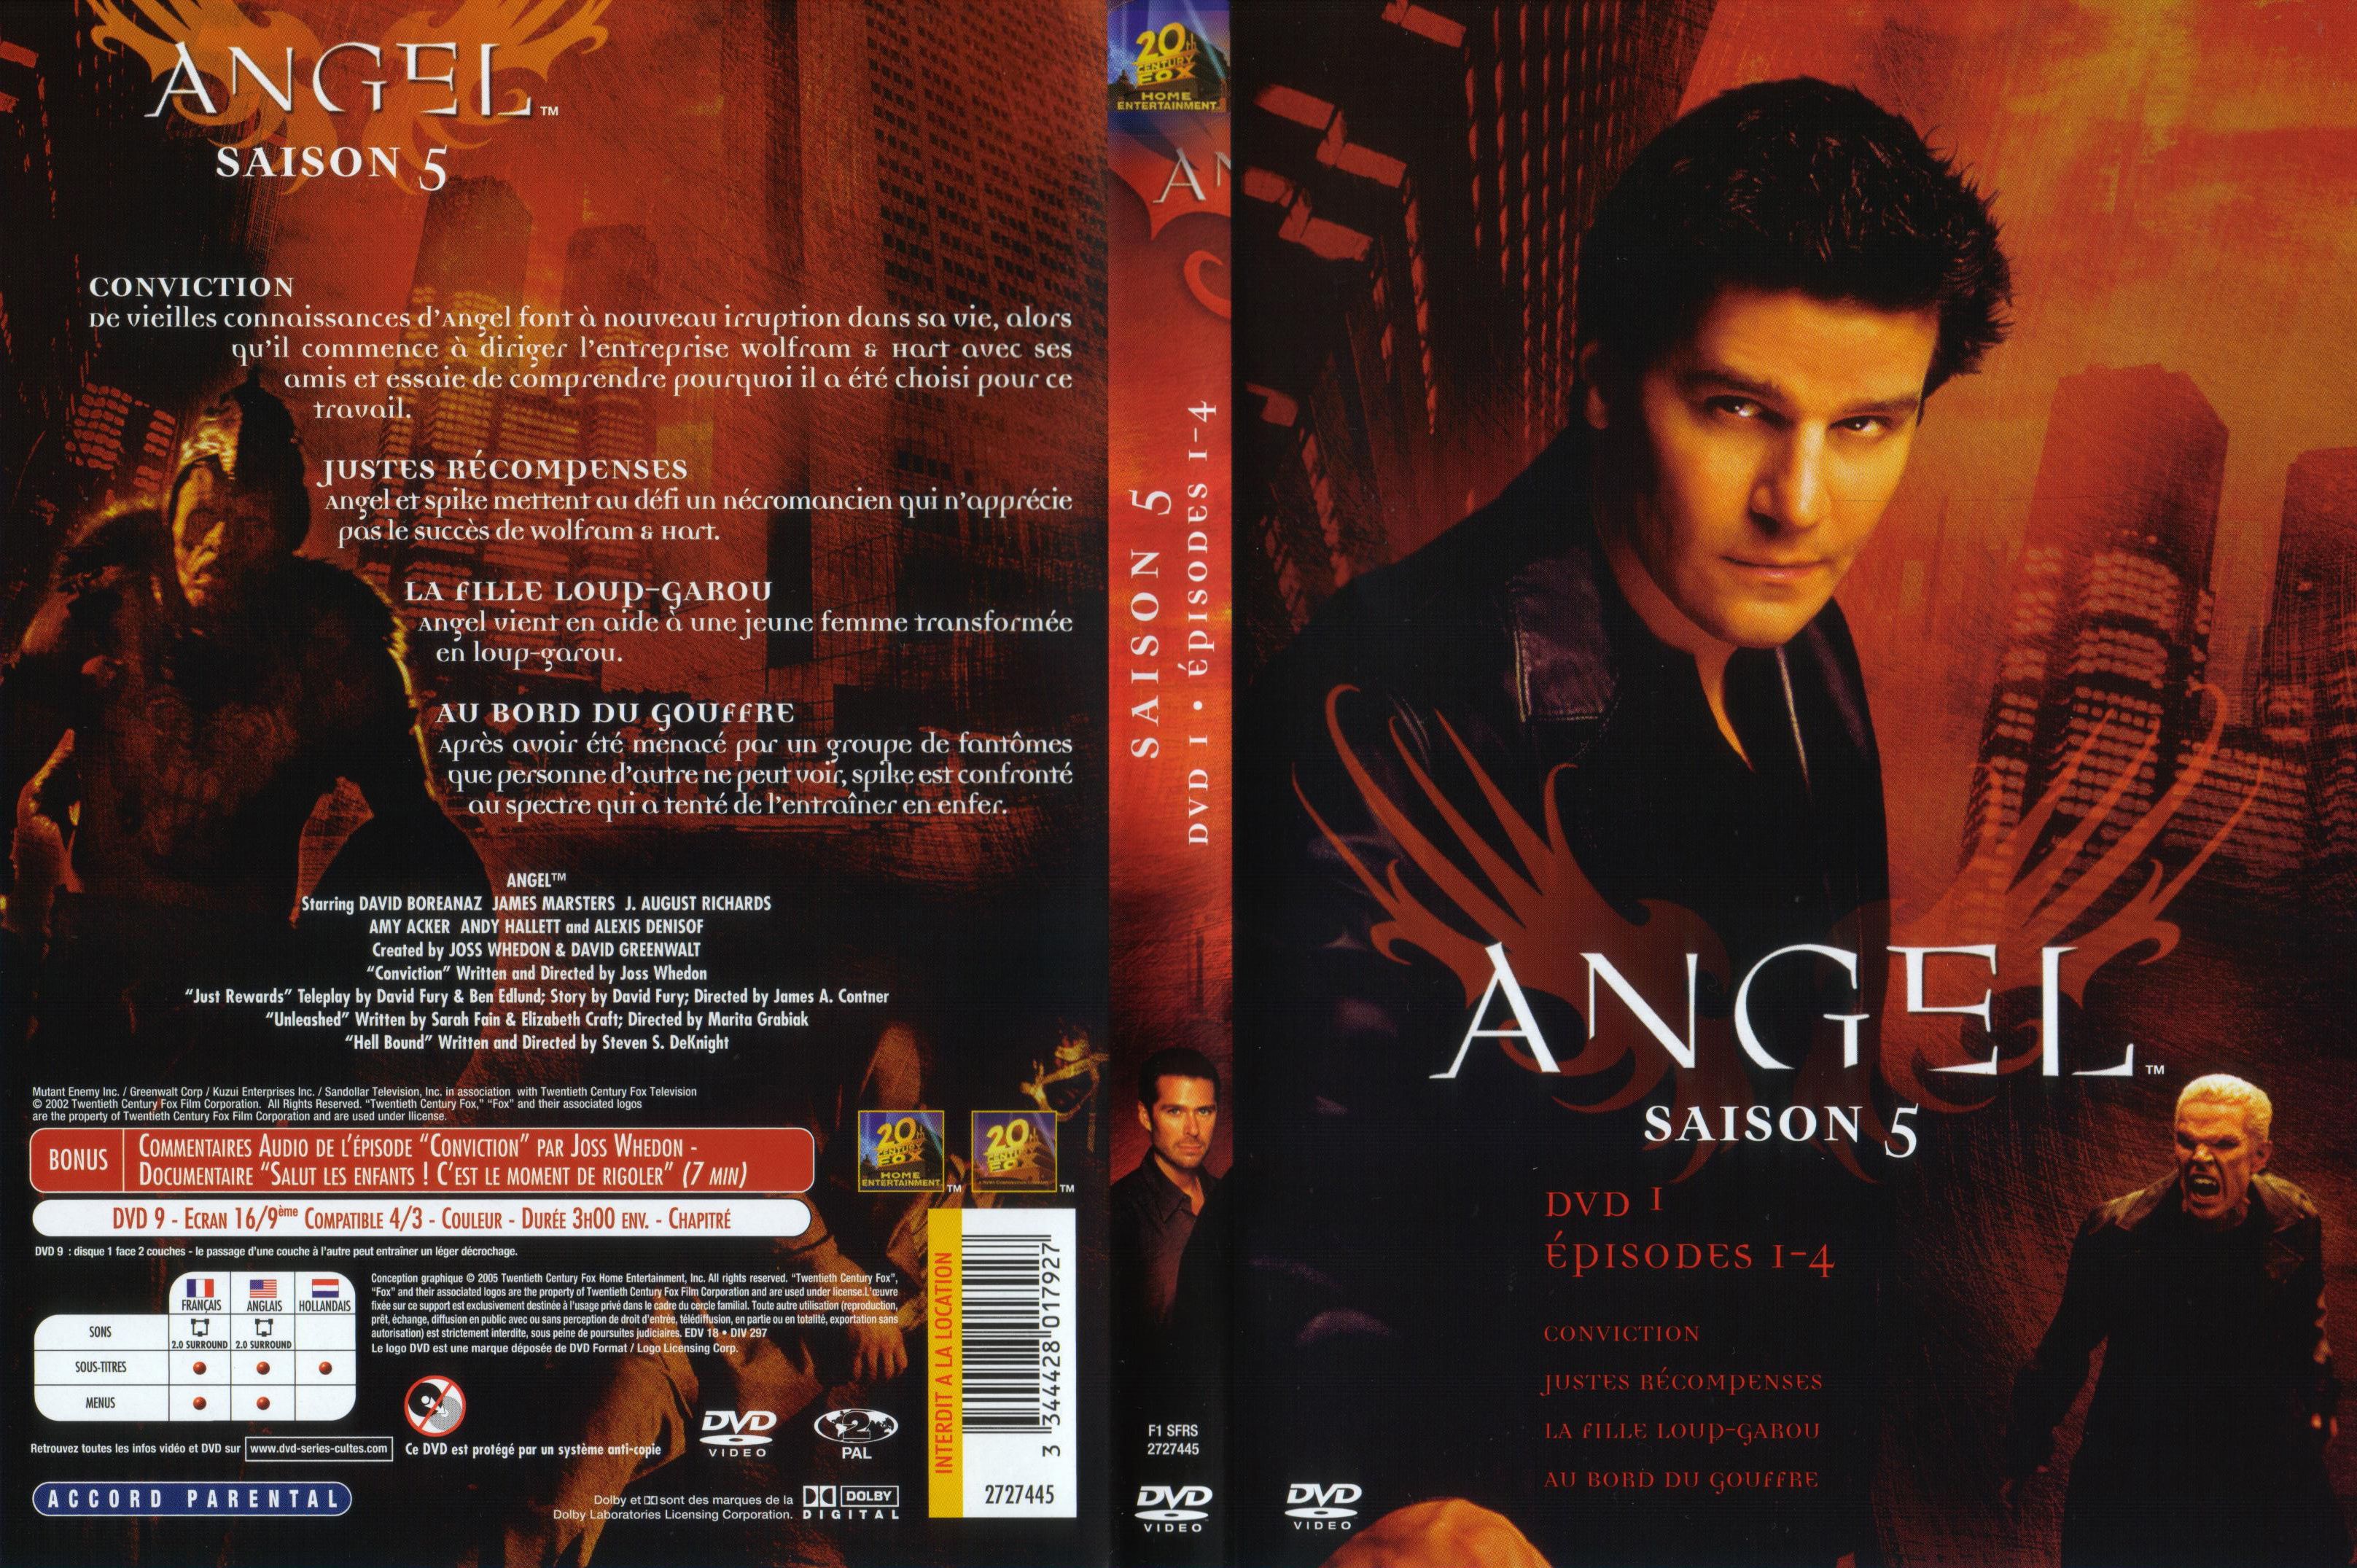 Jaquette DVD Angel Saison 5 dvd 1